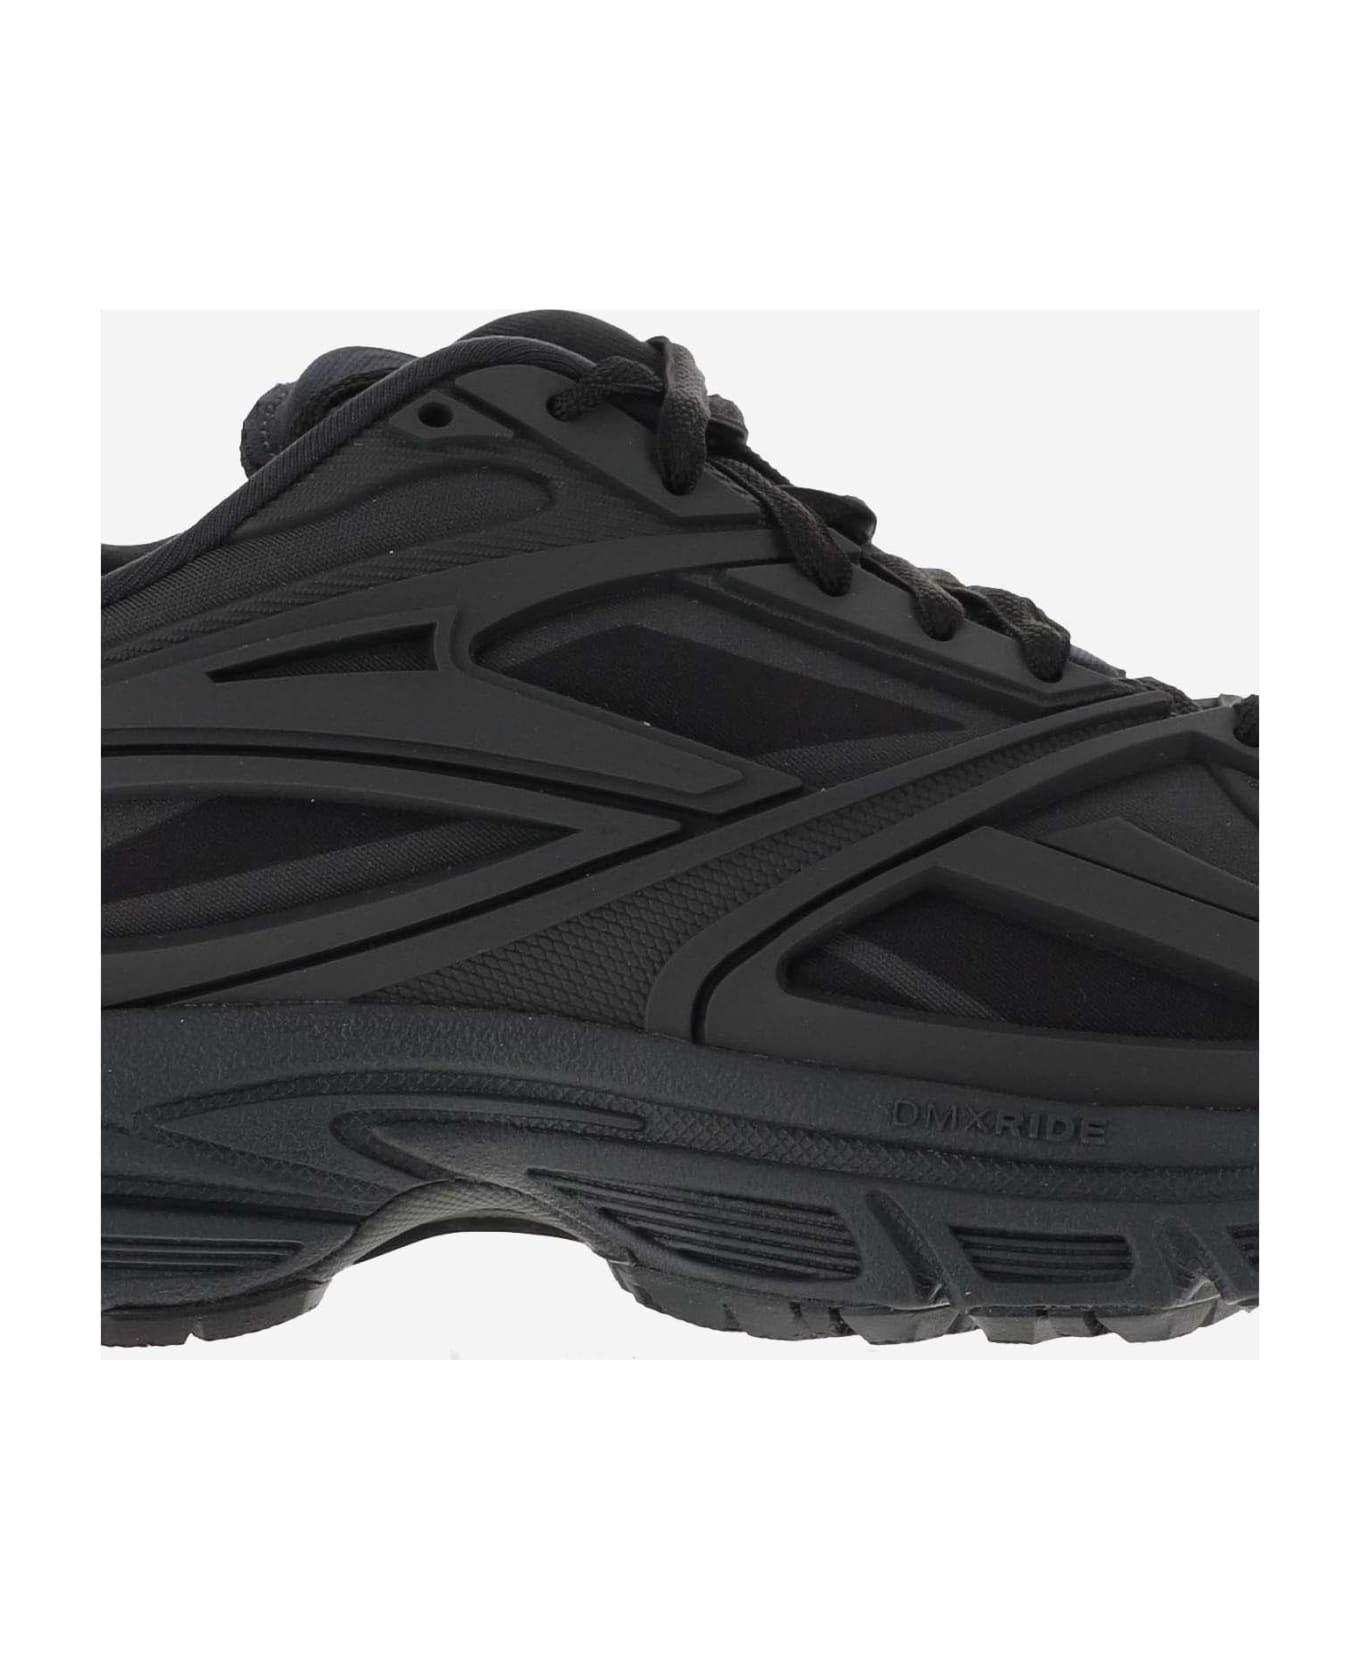 Reebok Premier Road Synthetic Fabric Sneaker - Black